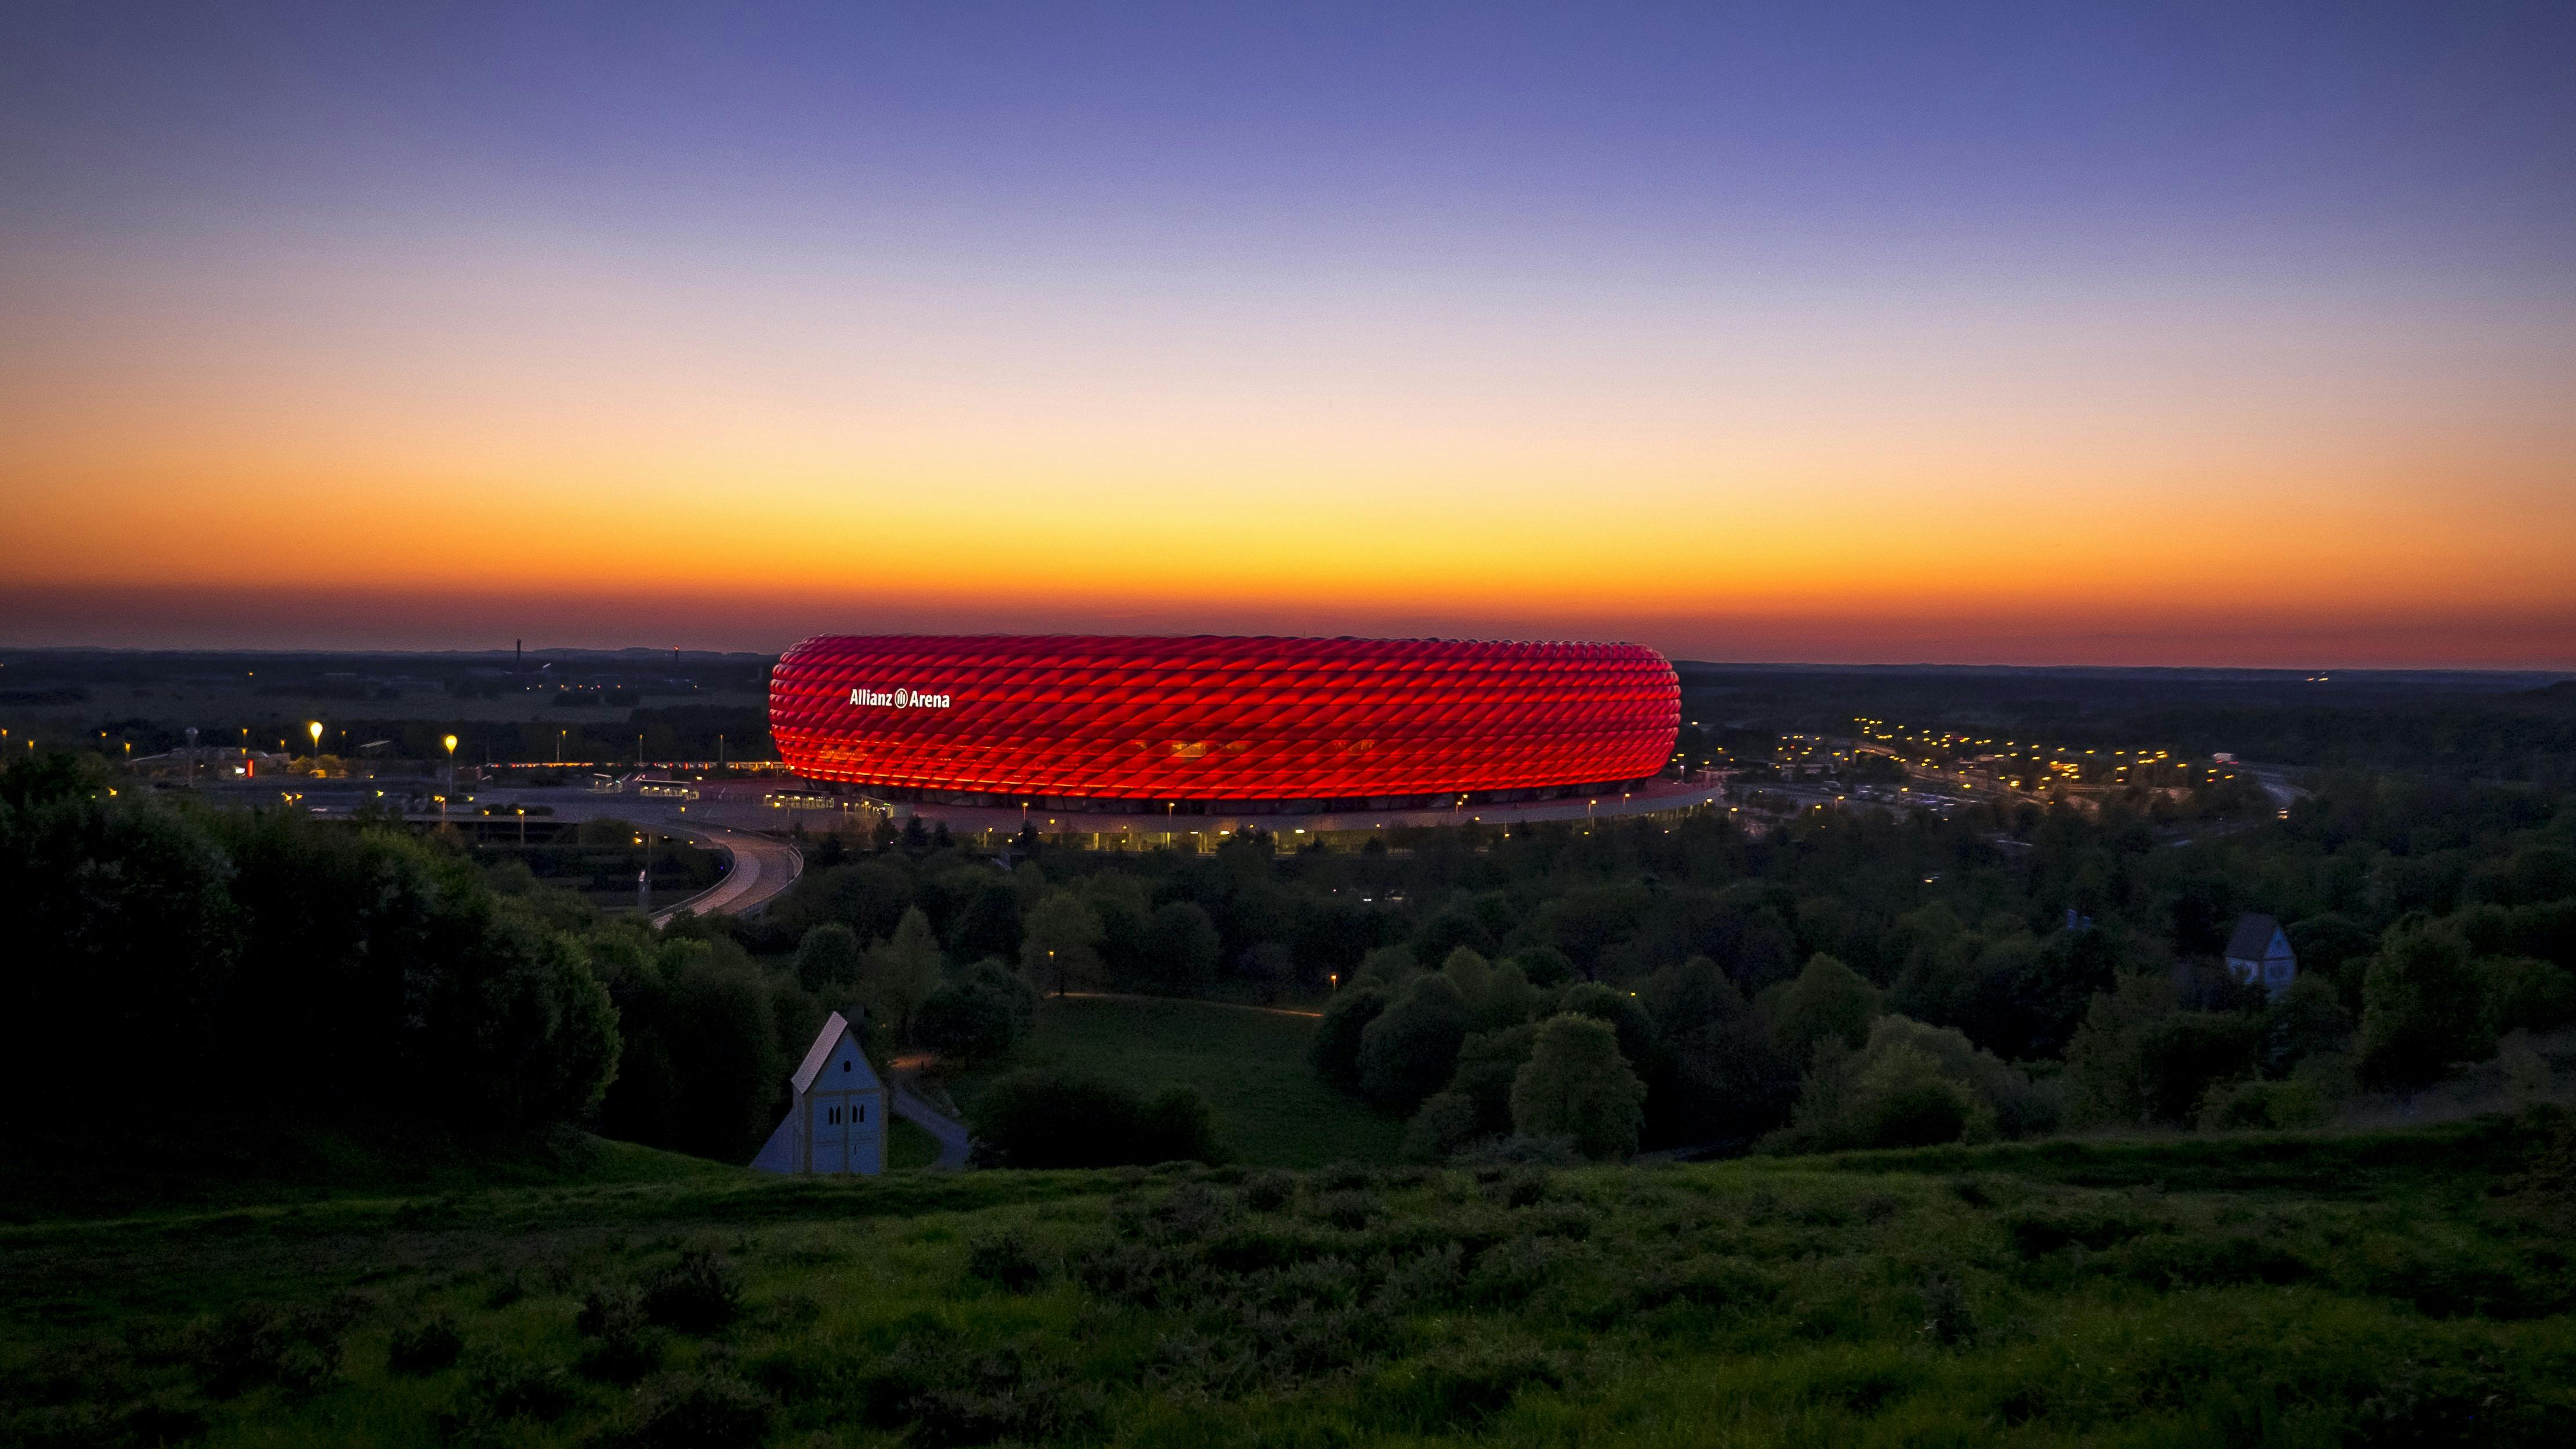 Munich city tour with self-guided visit of the FC Bayern Munich stadium Musement